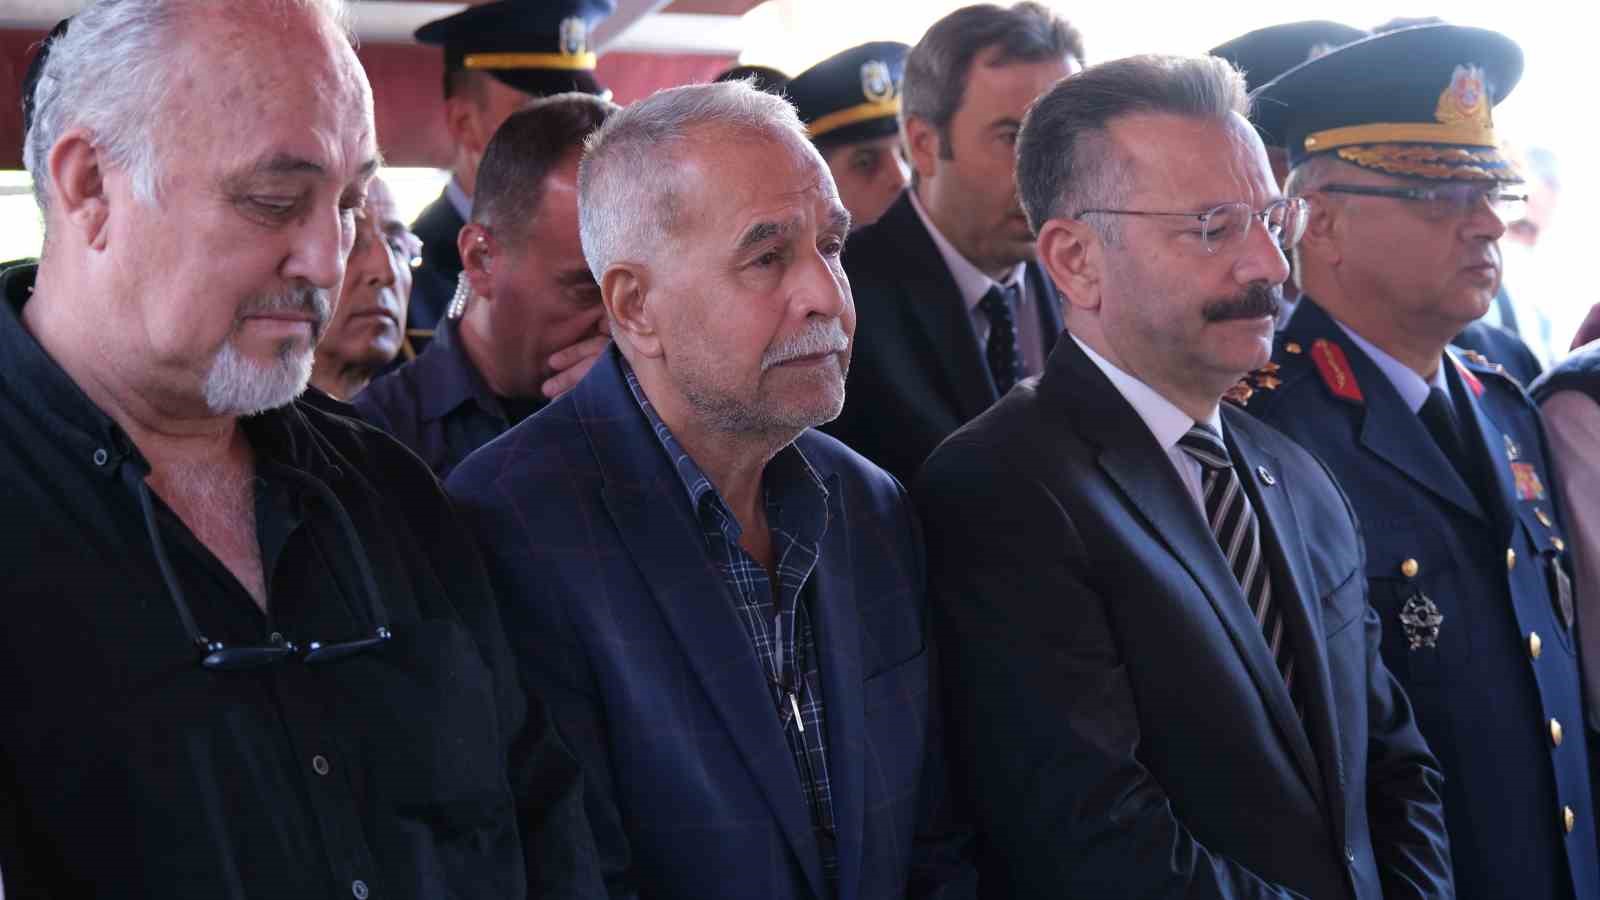 Pilot Mehmet Akif Tutuk gözyaşları içinde son yolculuğuna uğurlandı